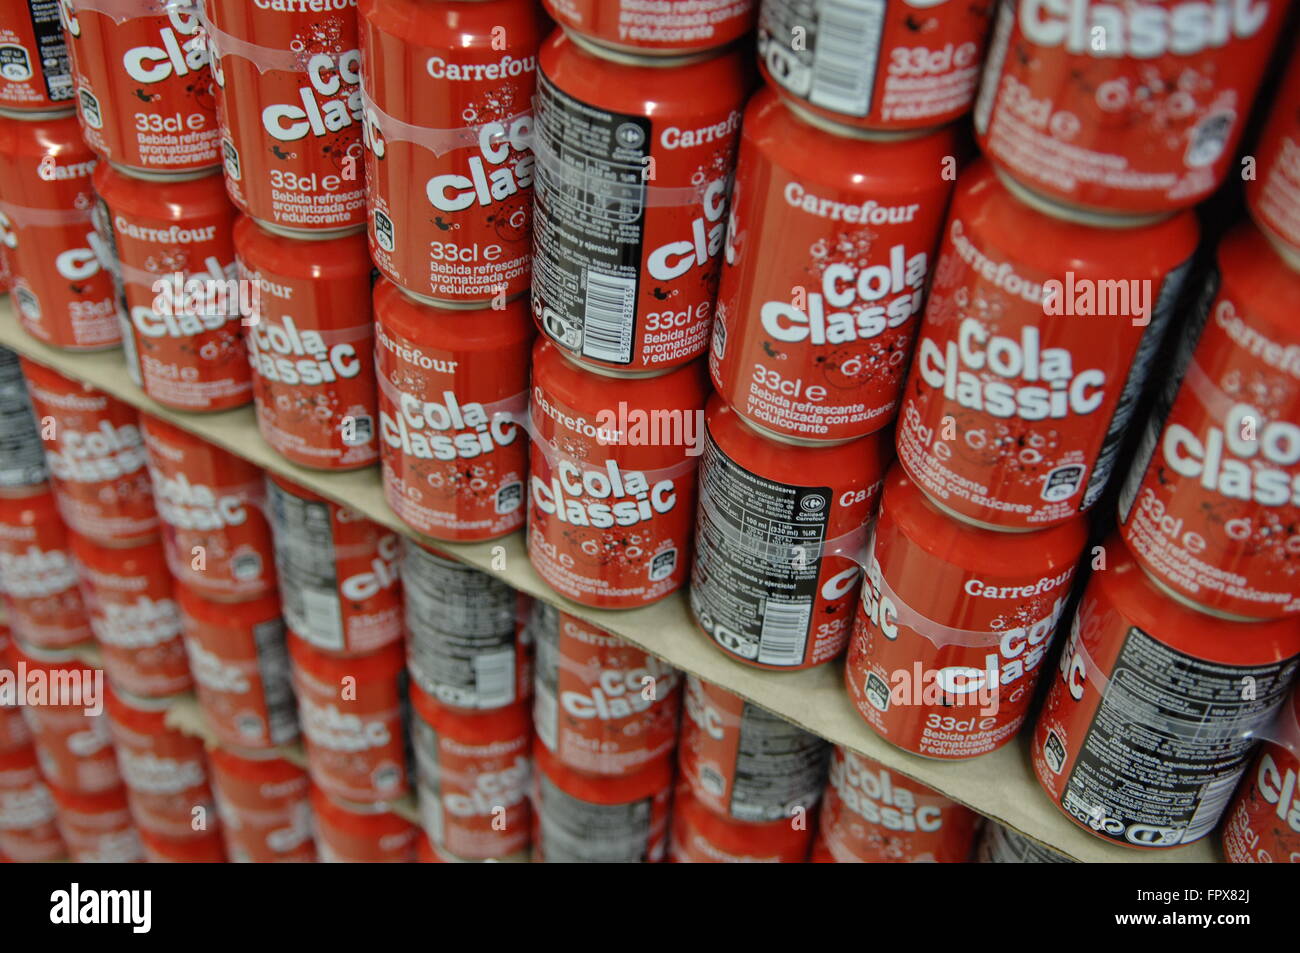 Cola de la marque propre Carrefour affiche les boîtes classiques dans leur supermarché à Malaga en Espagne. Banque D'Images